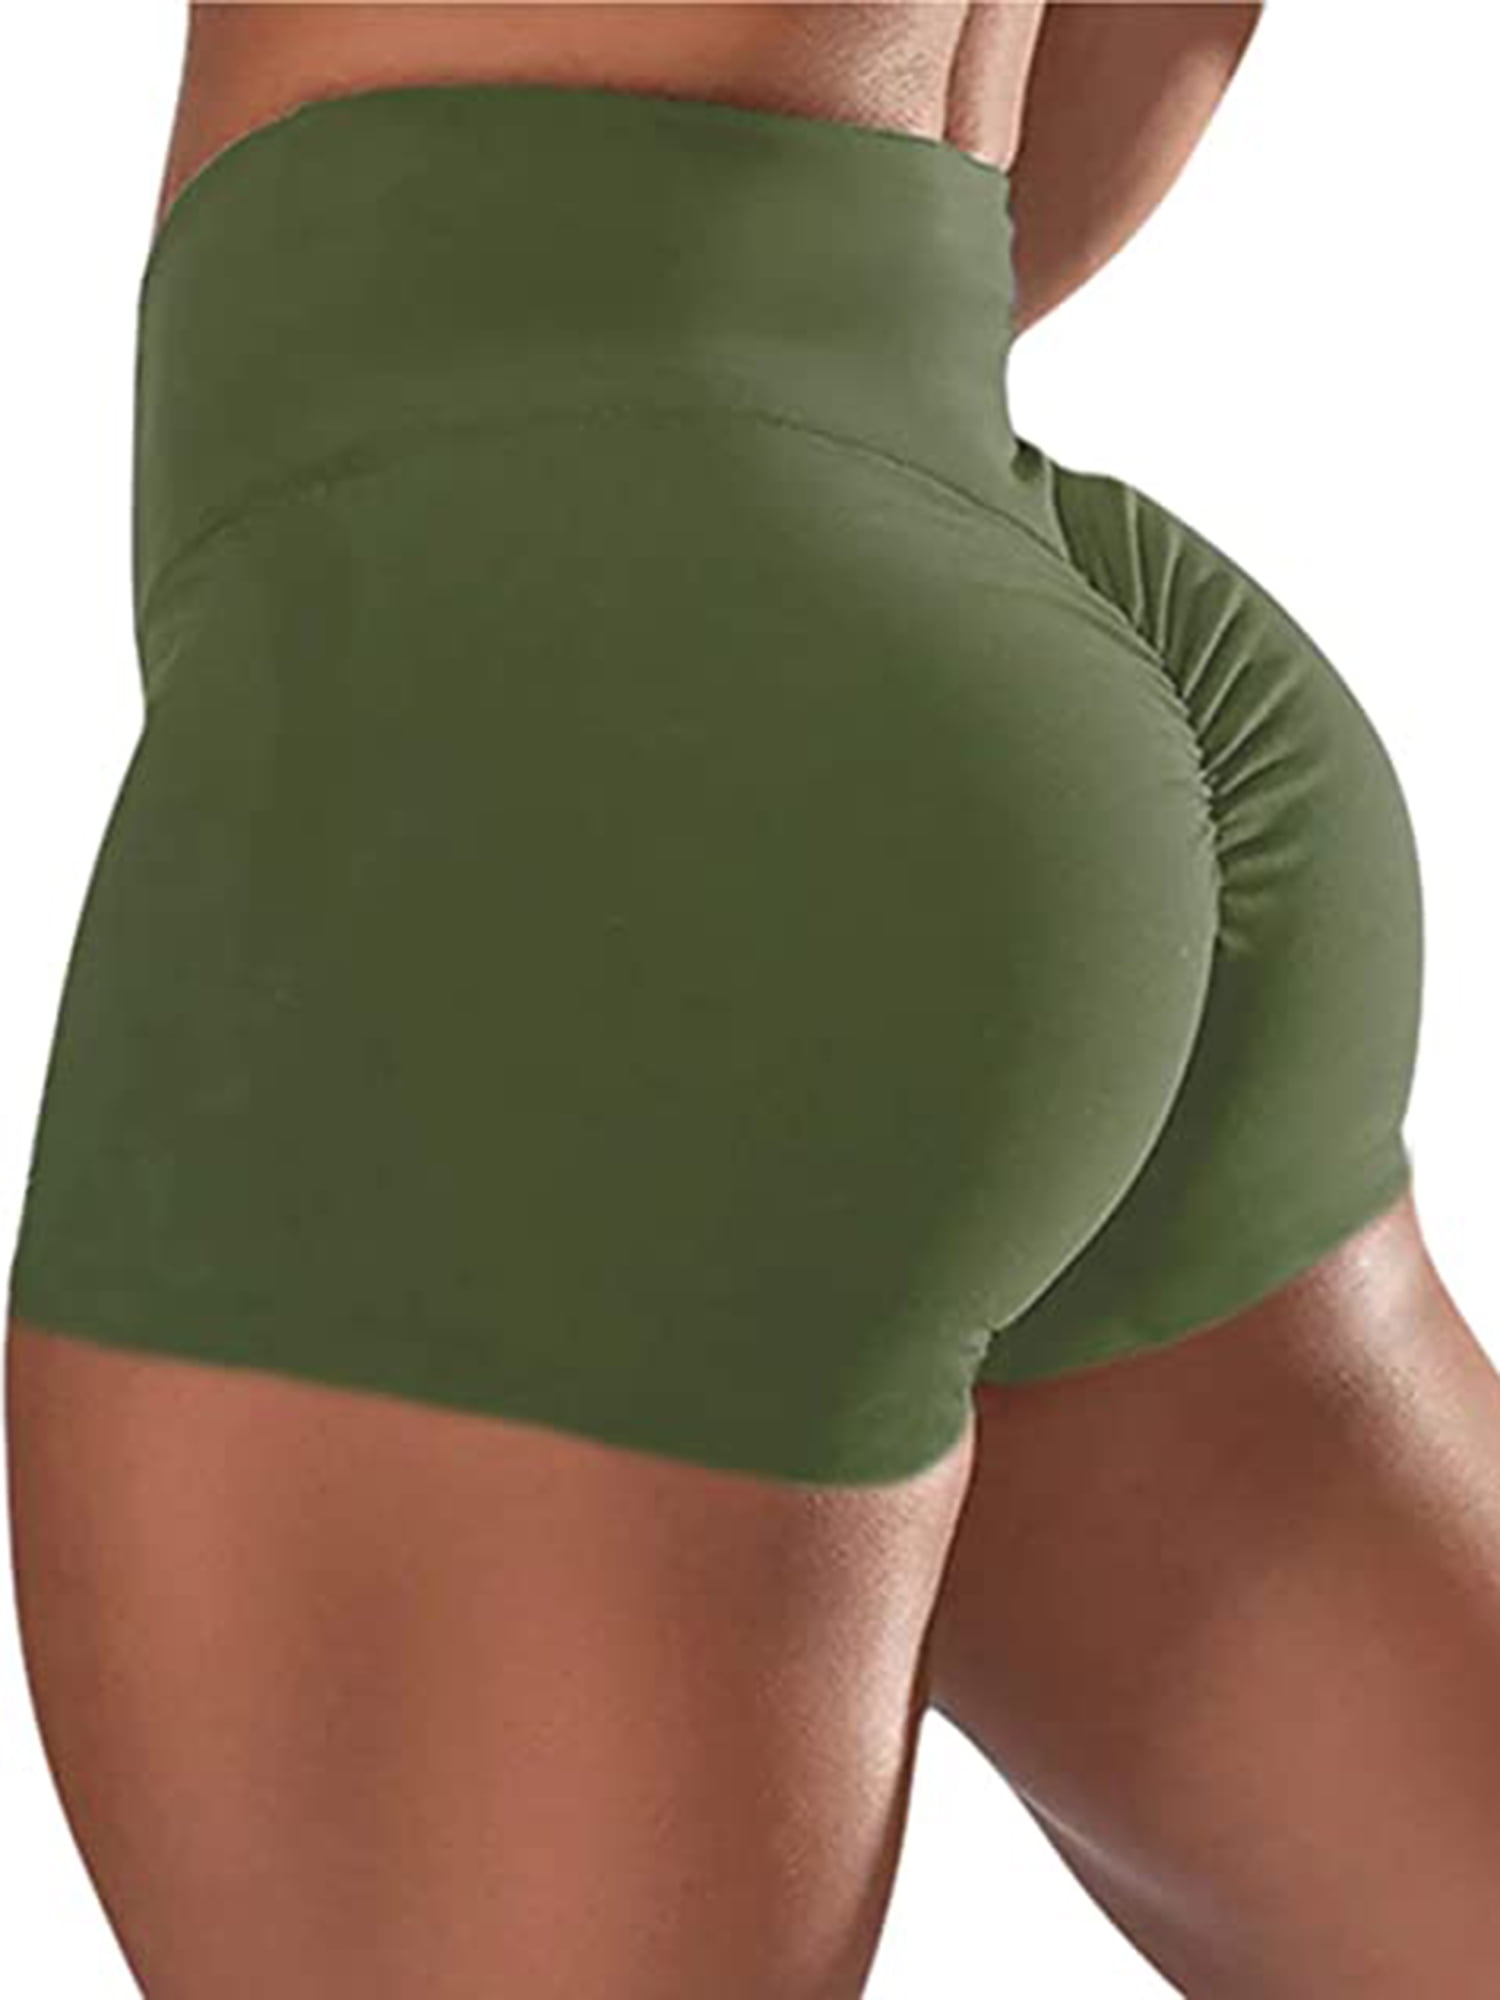 Nice Ass In Yoga Shorts